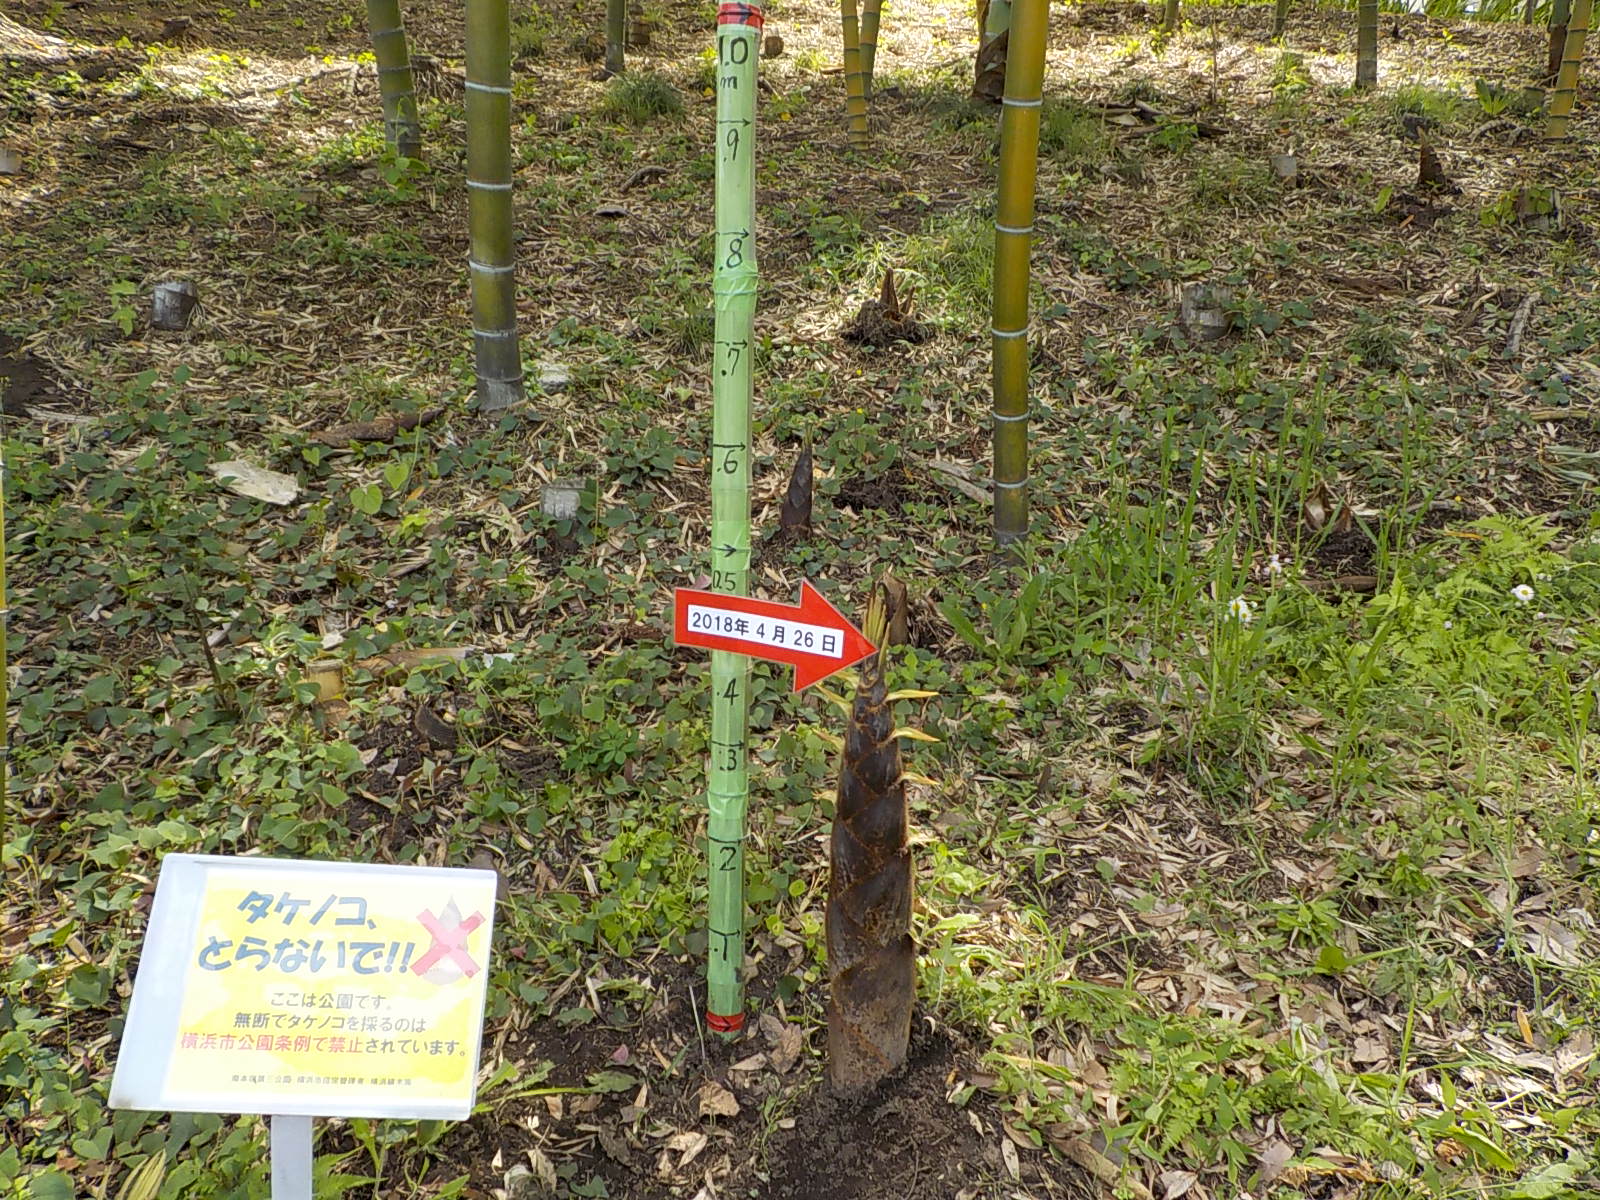 南本宿第三公園 豊かな自然と竹林 そして楽しい菜園 心なごむ憩いのパーク 18 4月